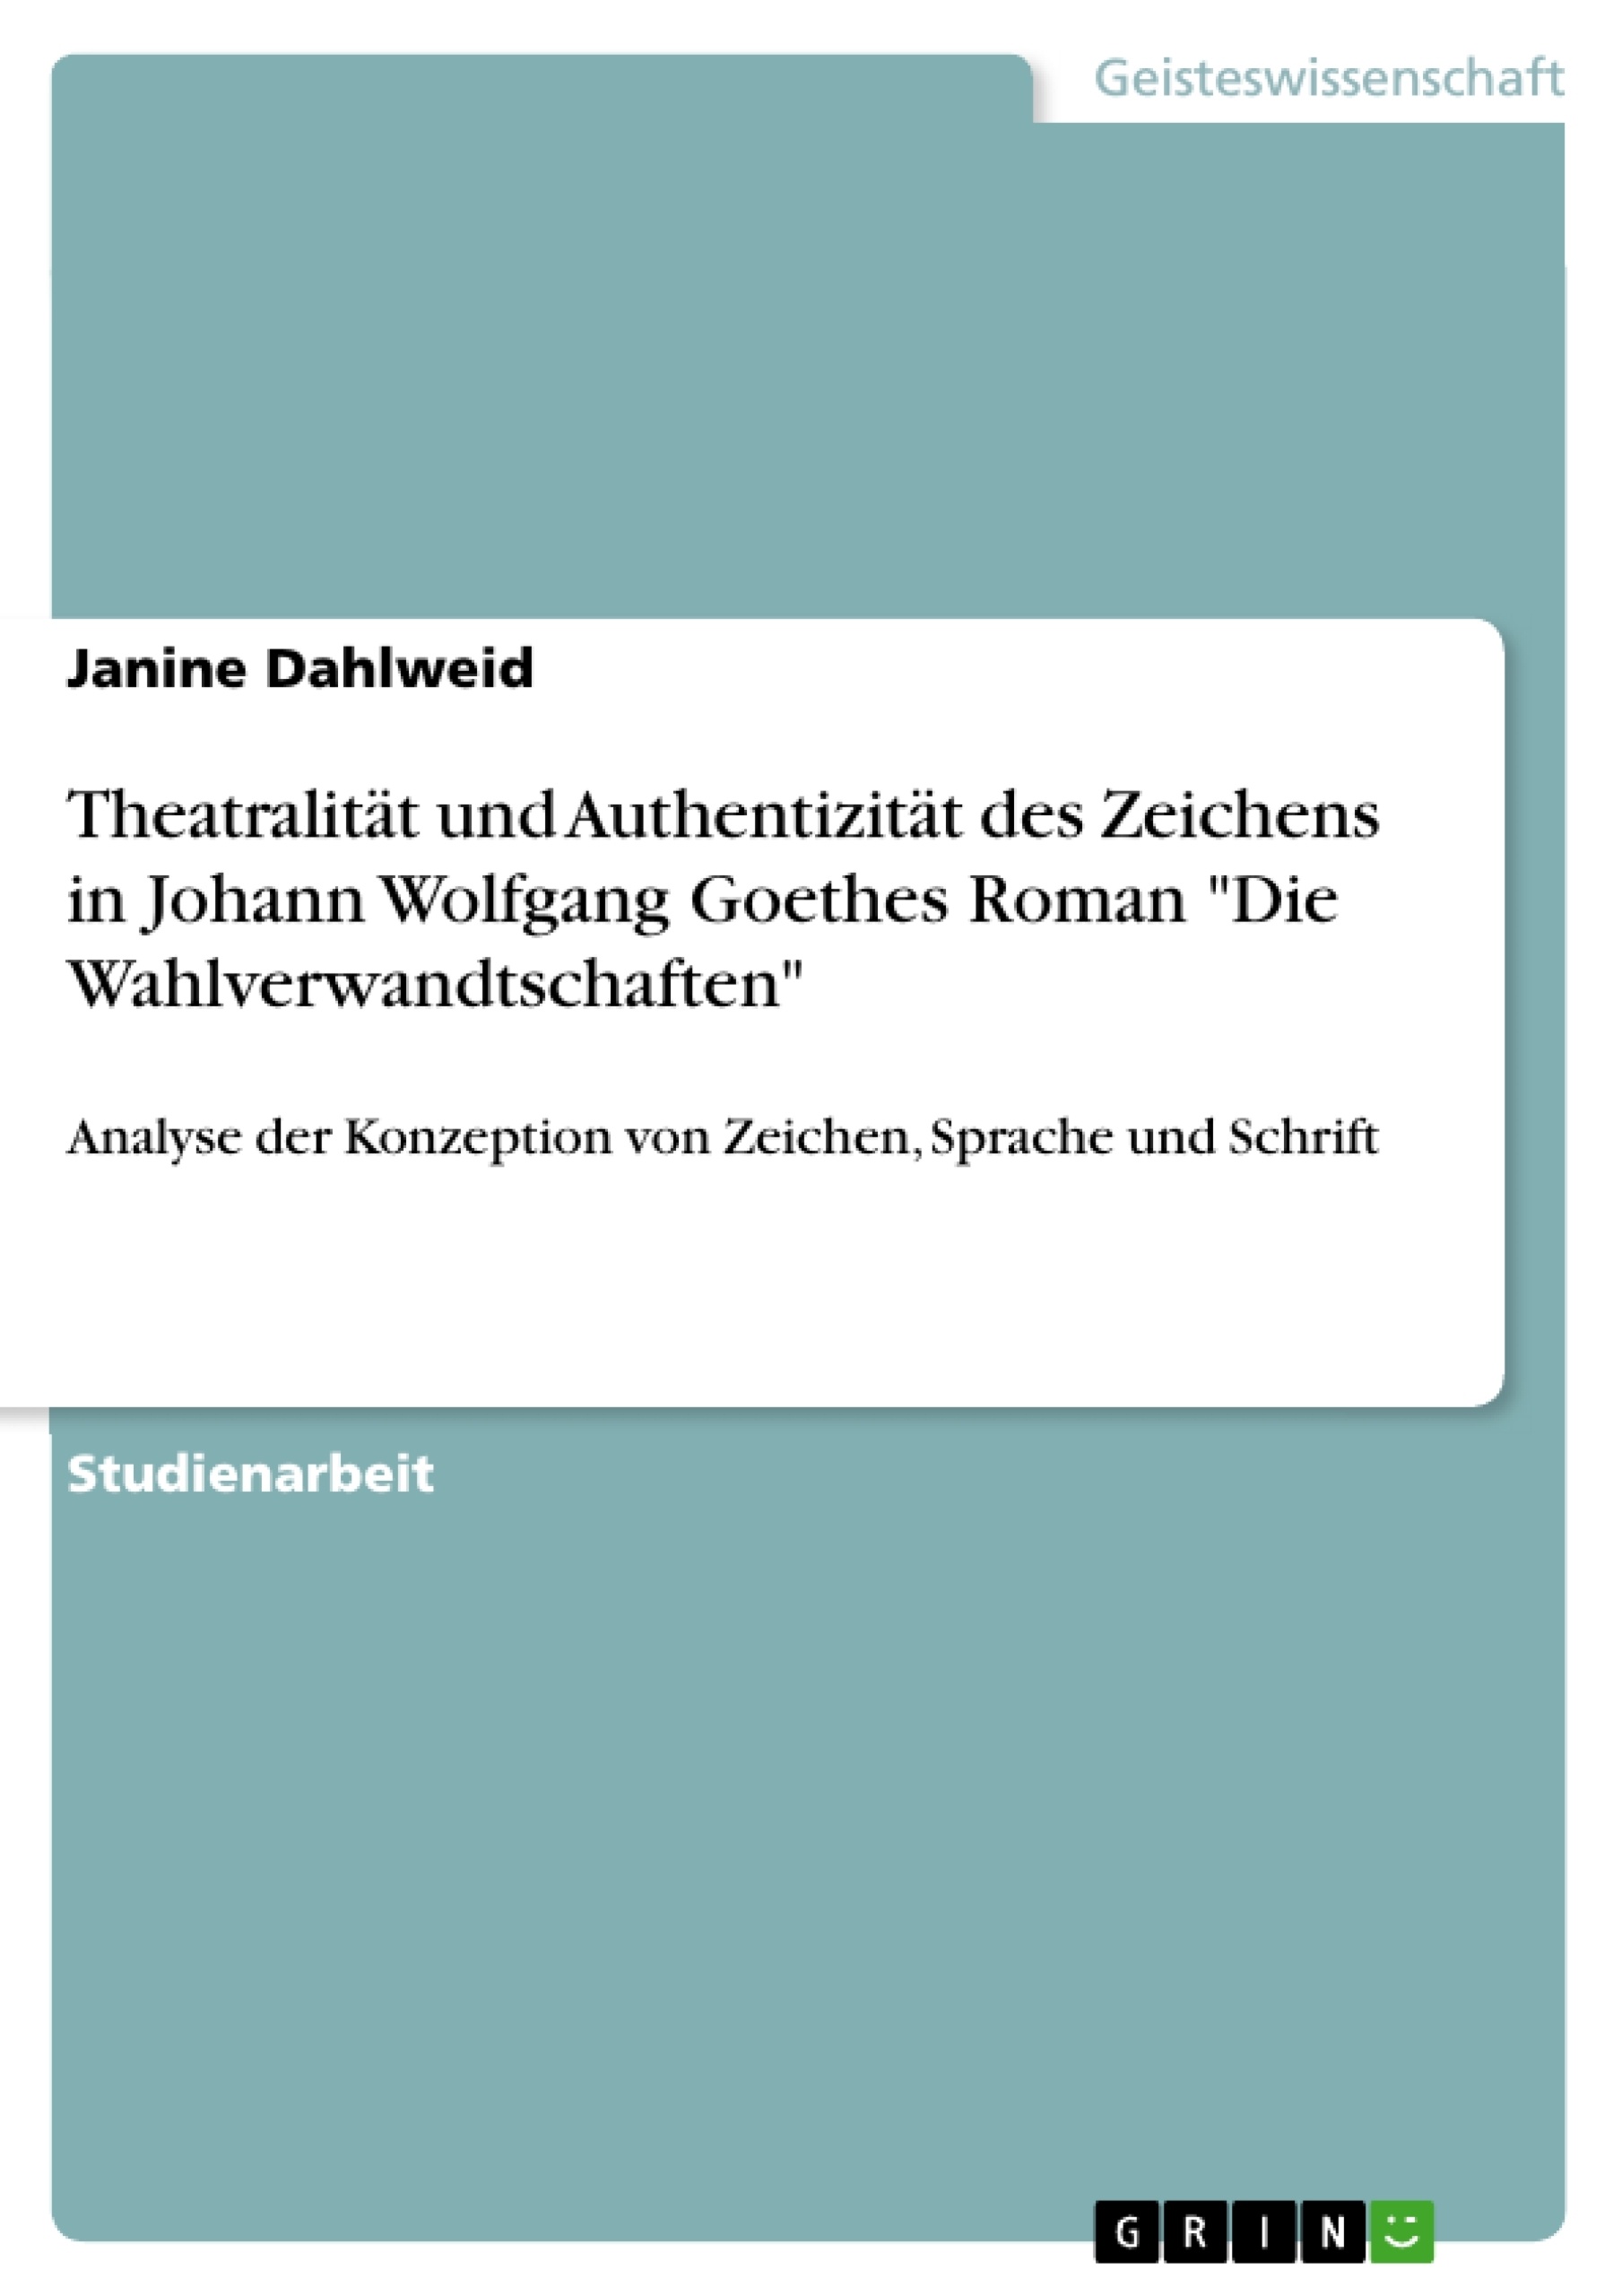 Titel: Theatralität und Authentizität des Zeichens in Johann Wolfgang Goethes Roman "Die Wahlverwandtschaften"